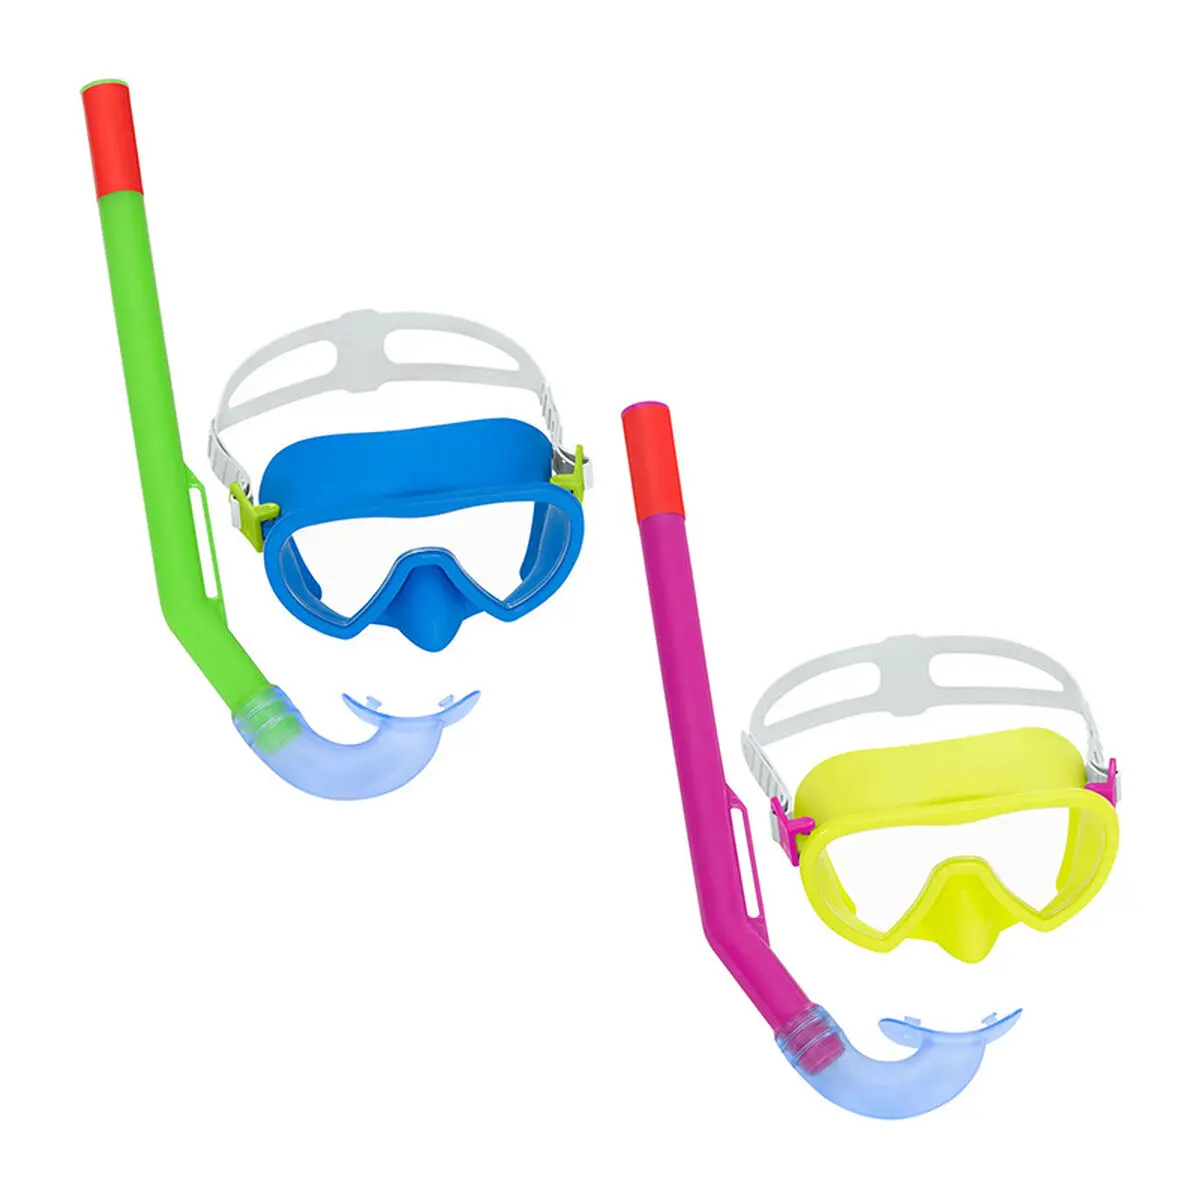 Occhialini da Snorkeling e Boccaglio per Bambini Bestway Giallo Azzurro Multicolore